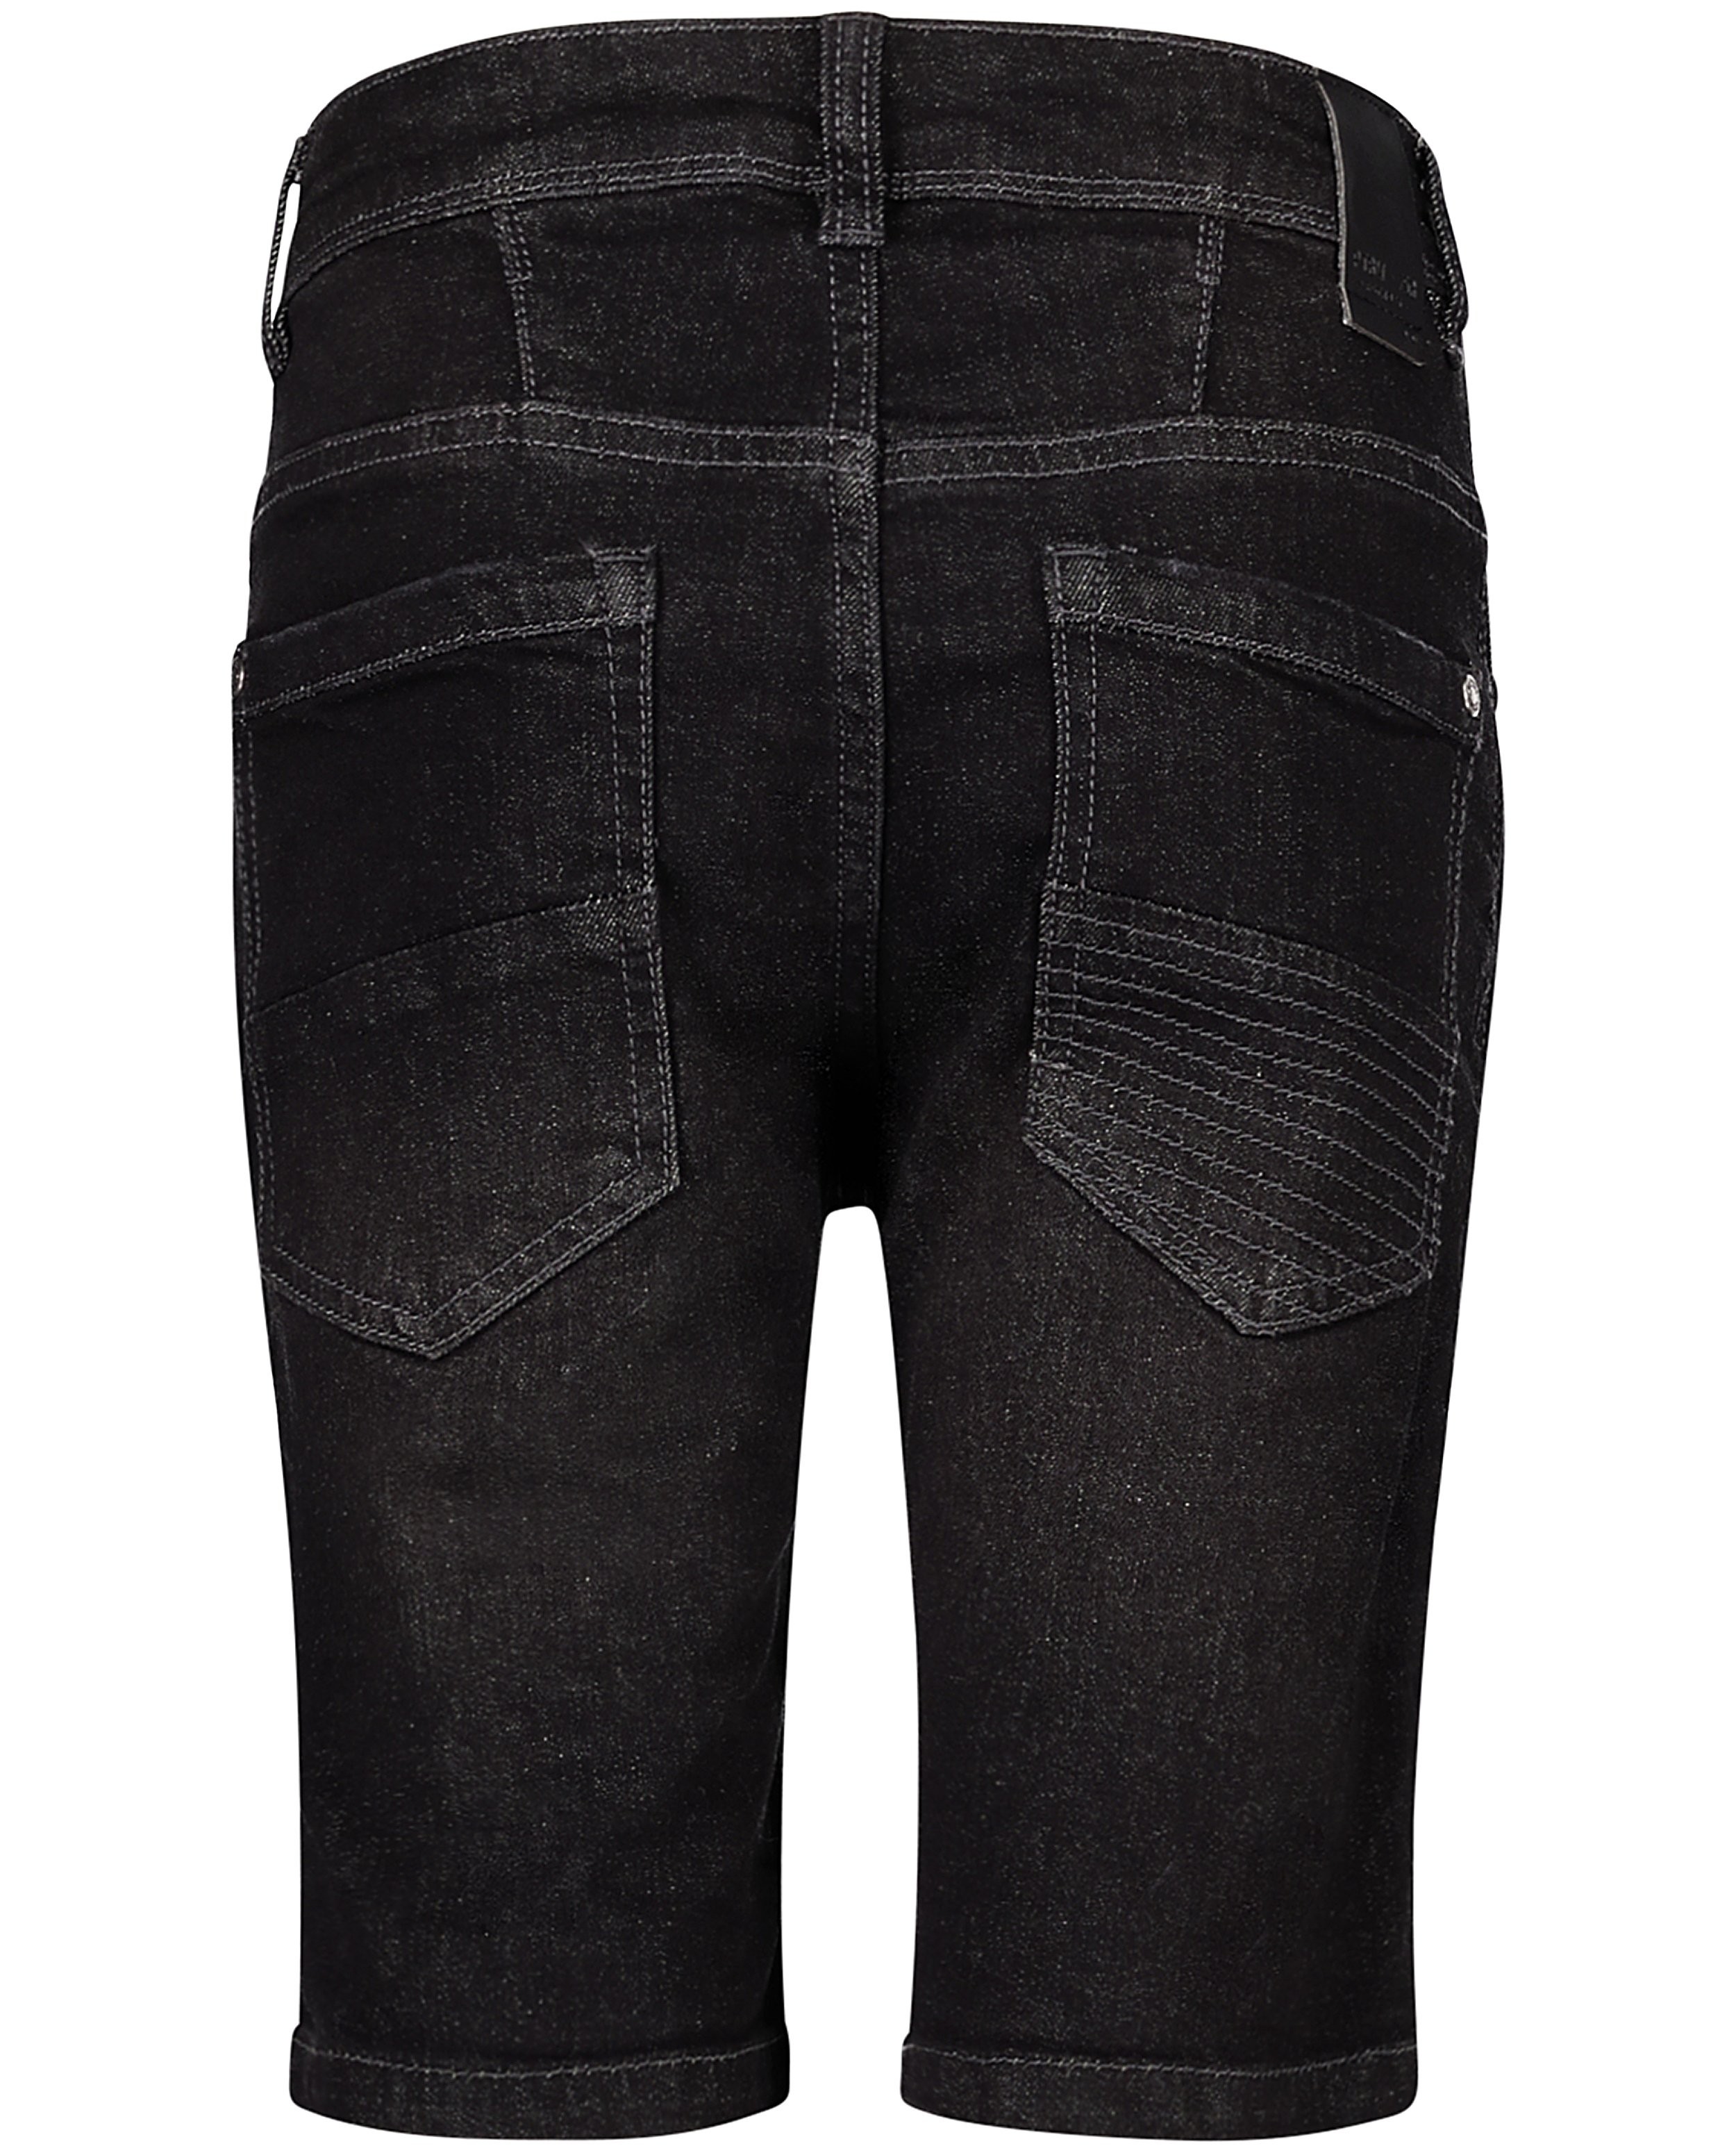 Shorten - Destroyed jeansshort